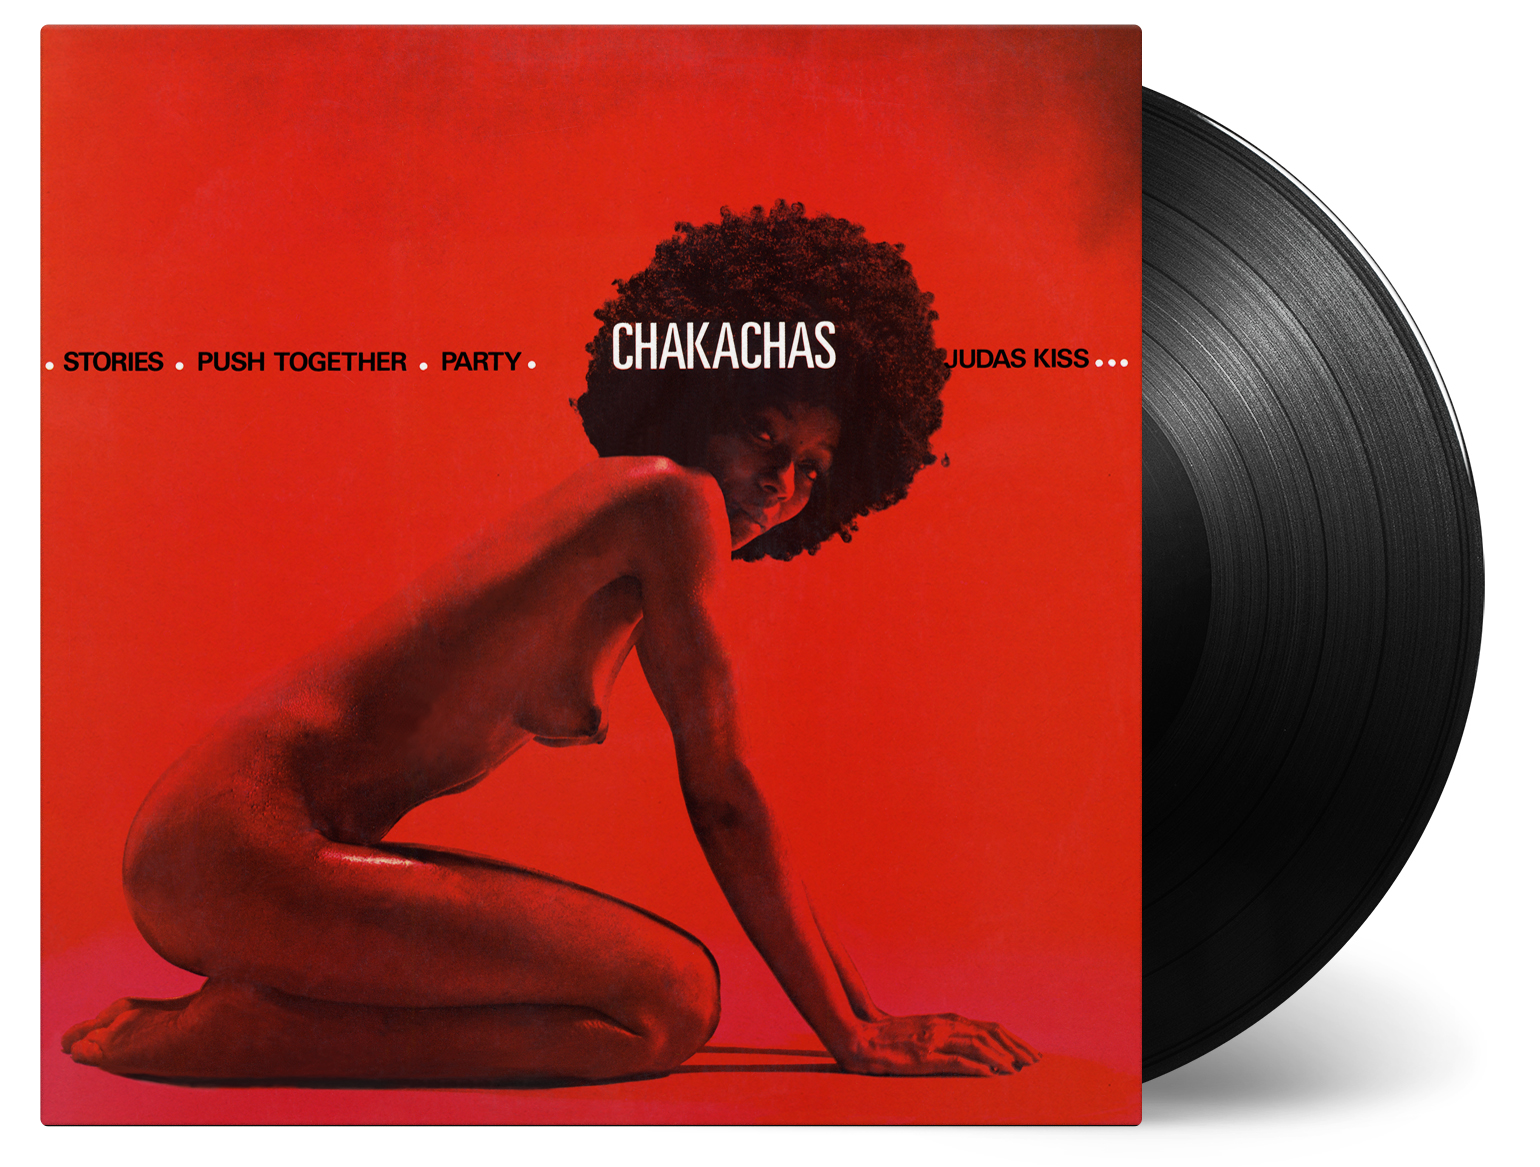 Chakachas Originally Released on Vinyl in 1972 